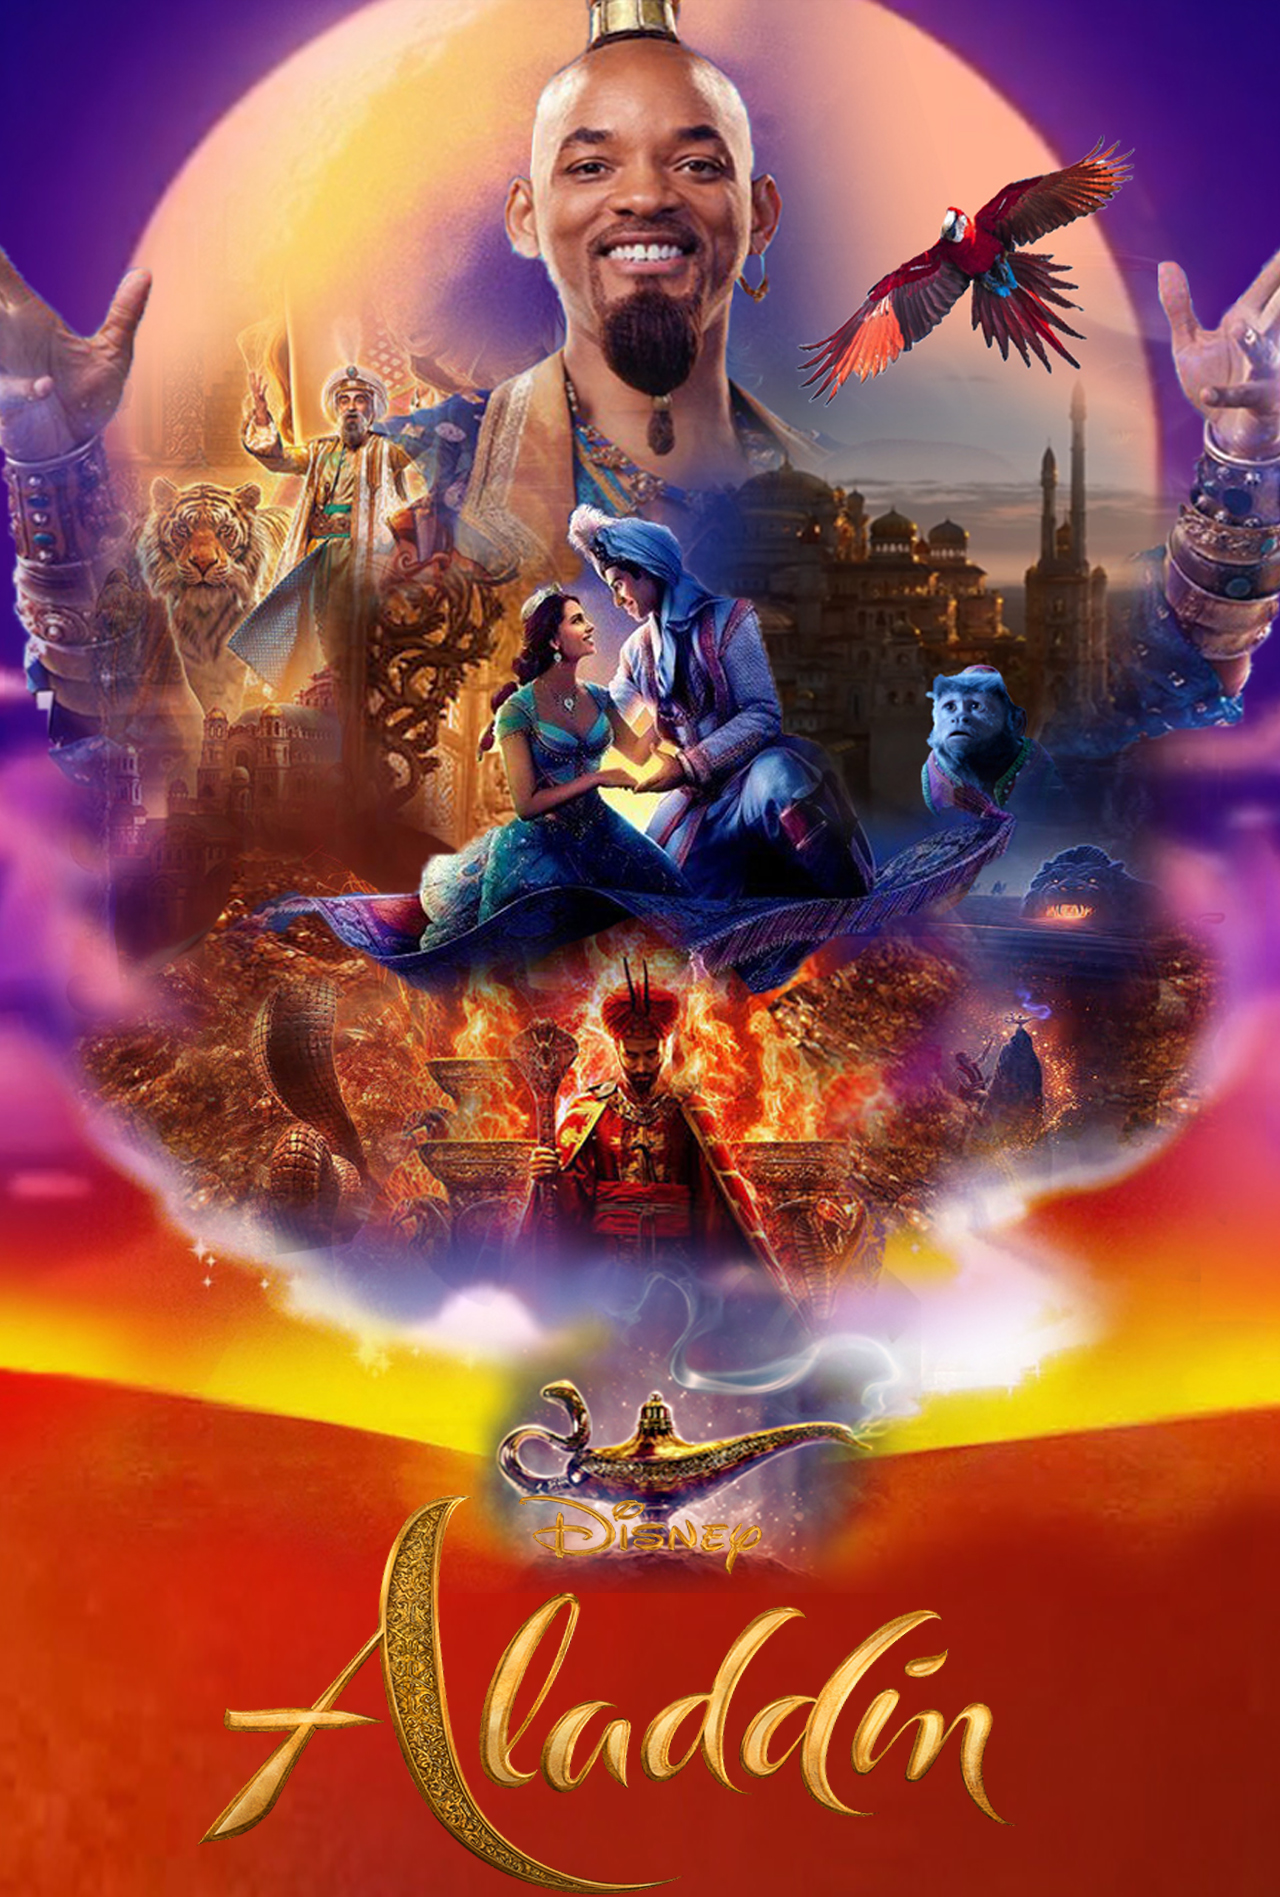 Постеры 2019. Аладдин Aladdin 2019 Постер.